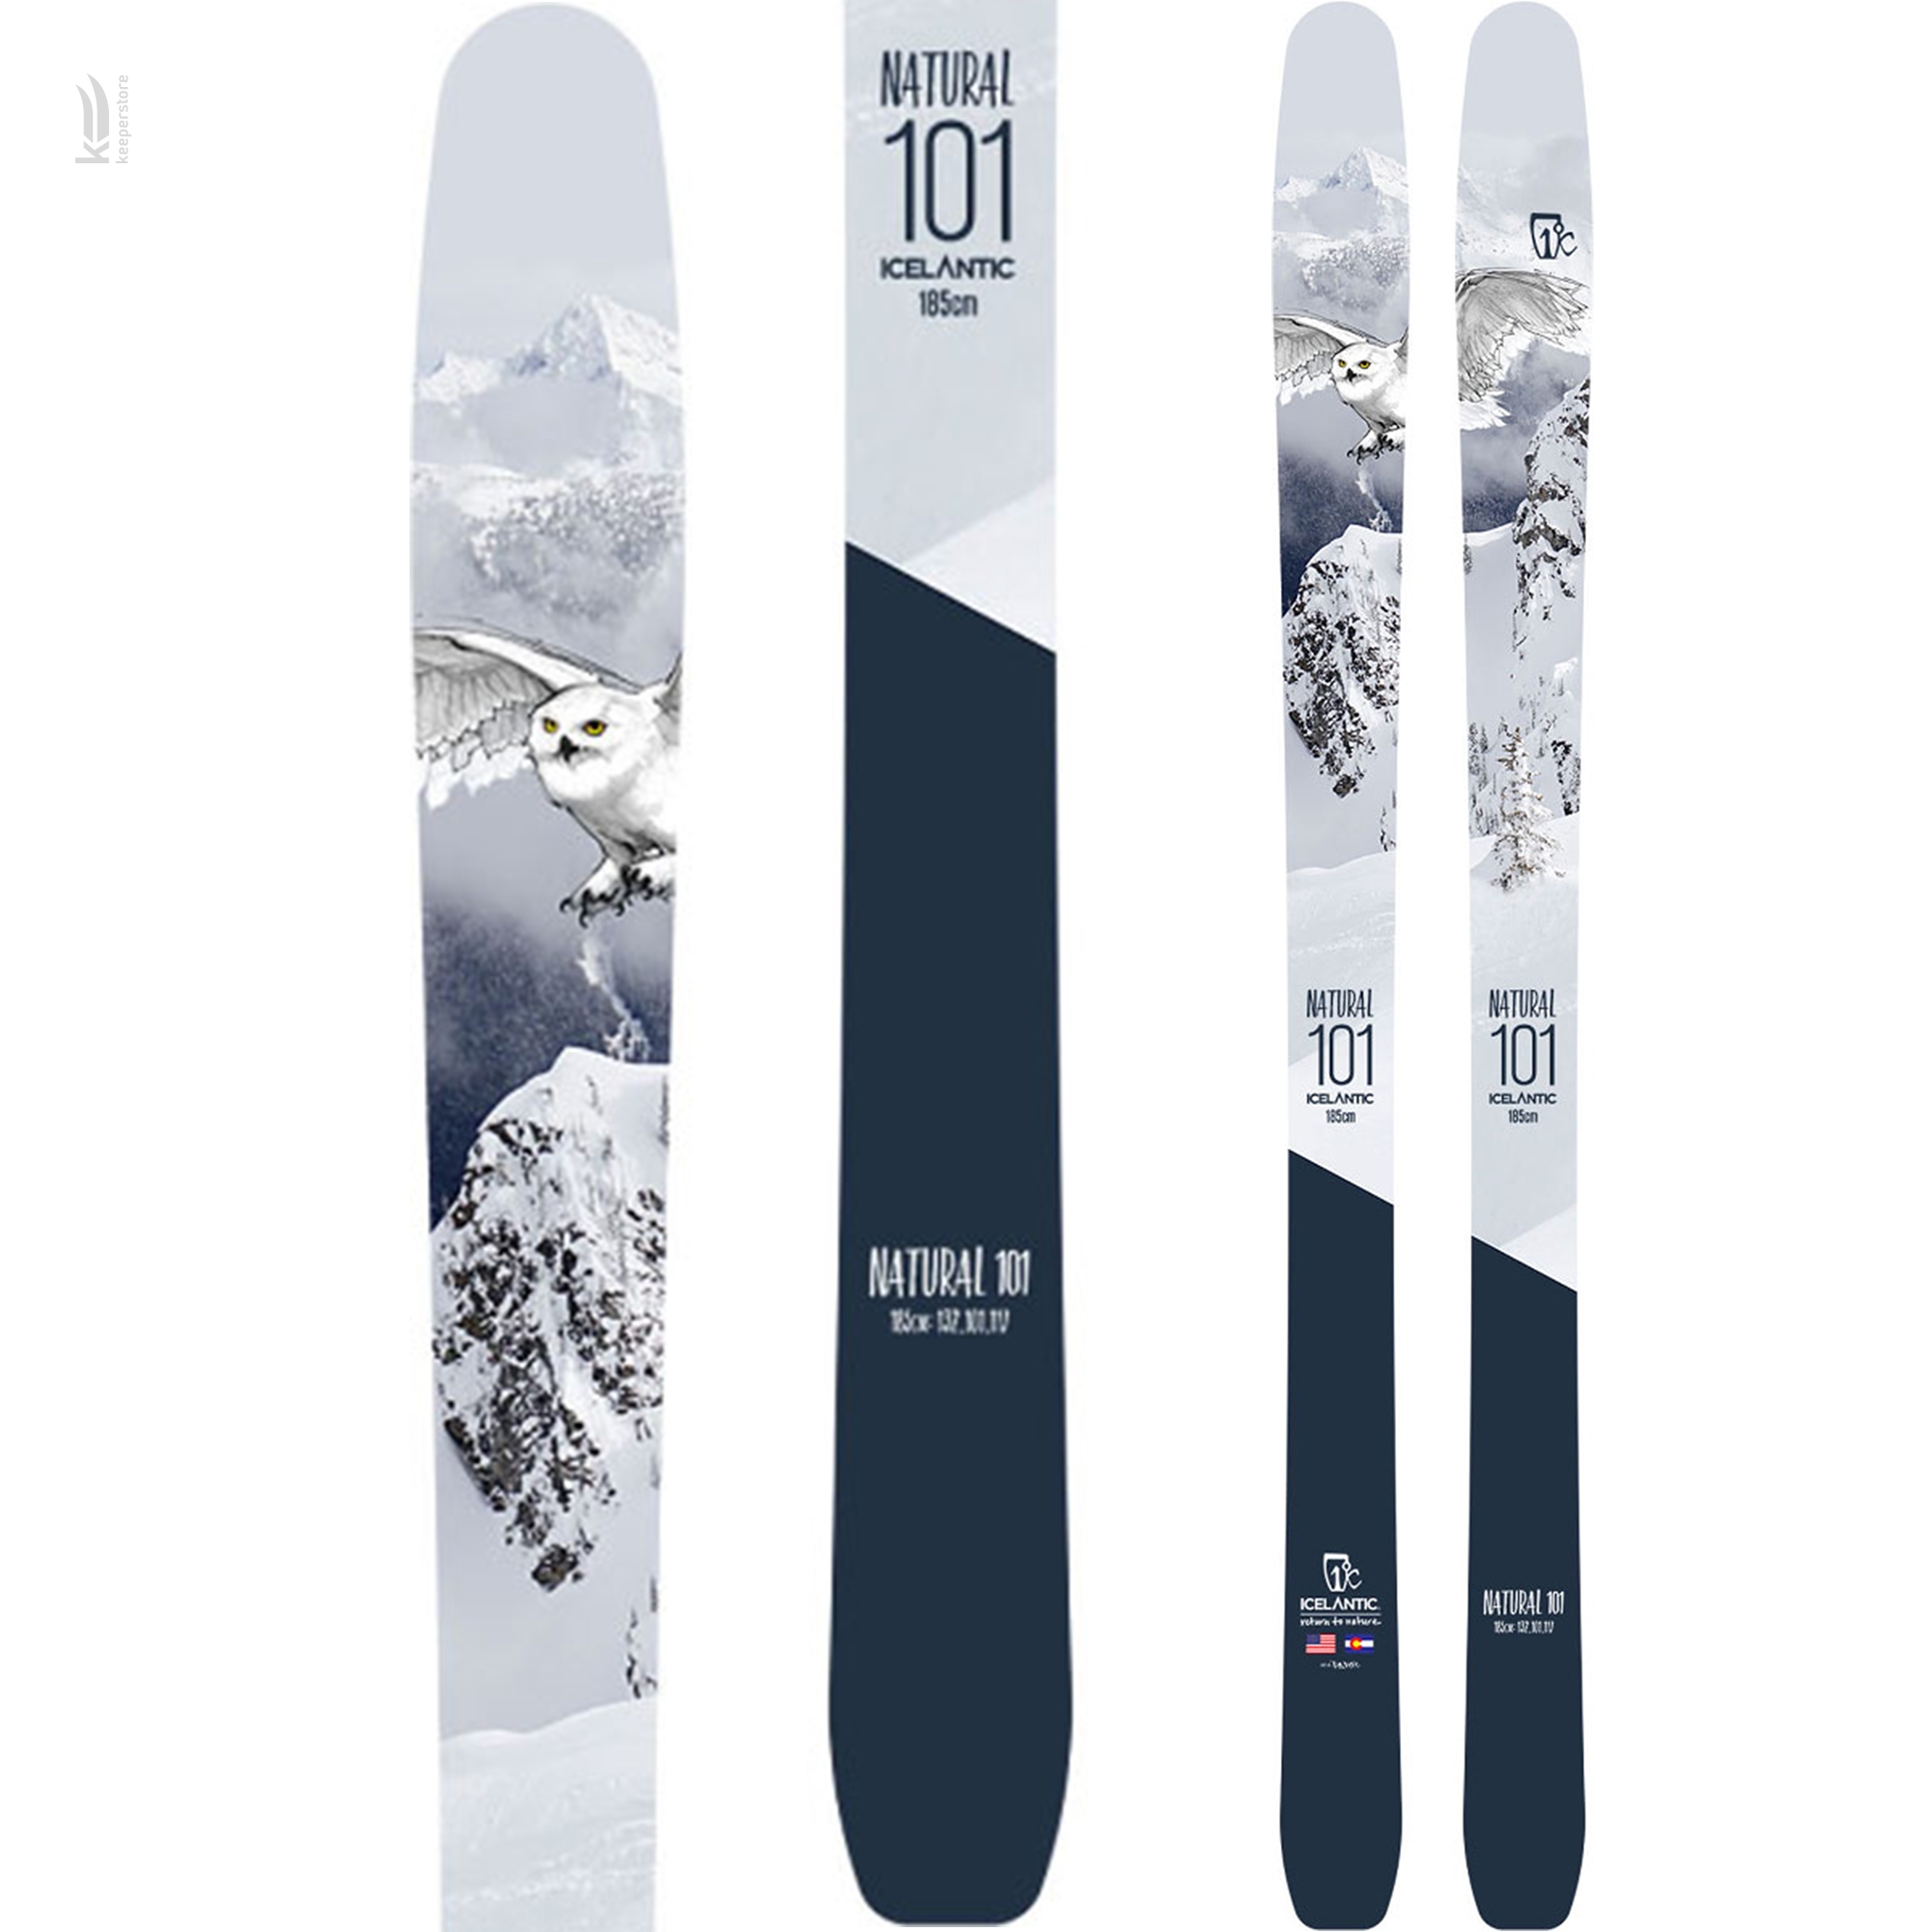 Лыжи для профессионалов Icelantic Natural 101 2018/2019 185cm